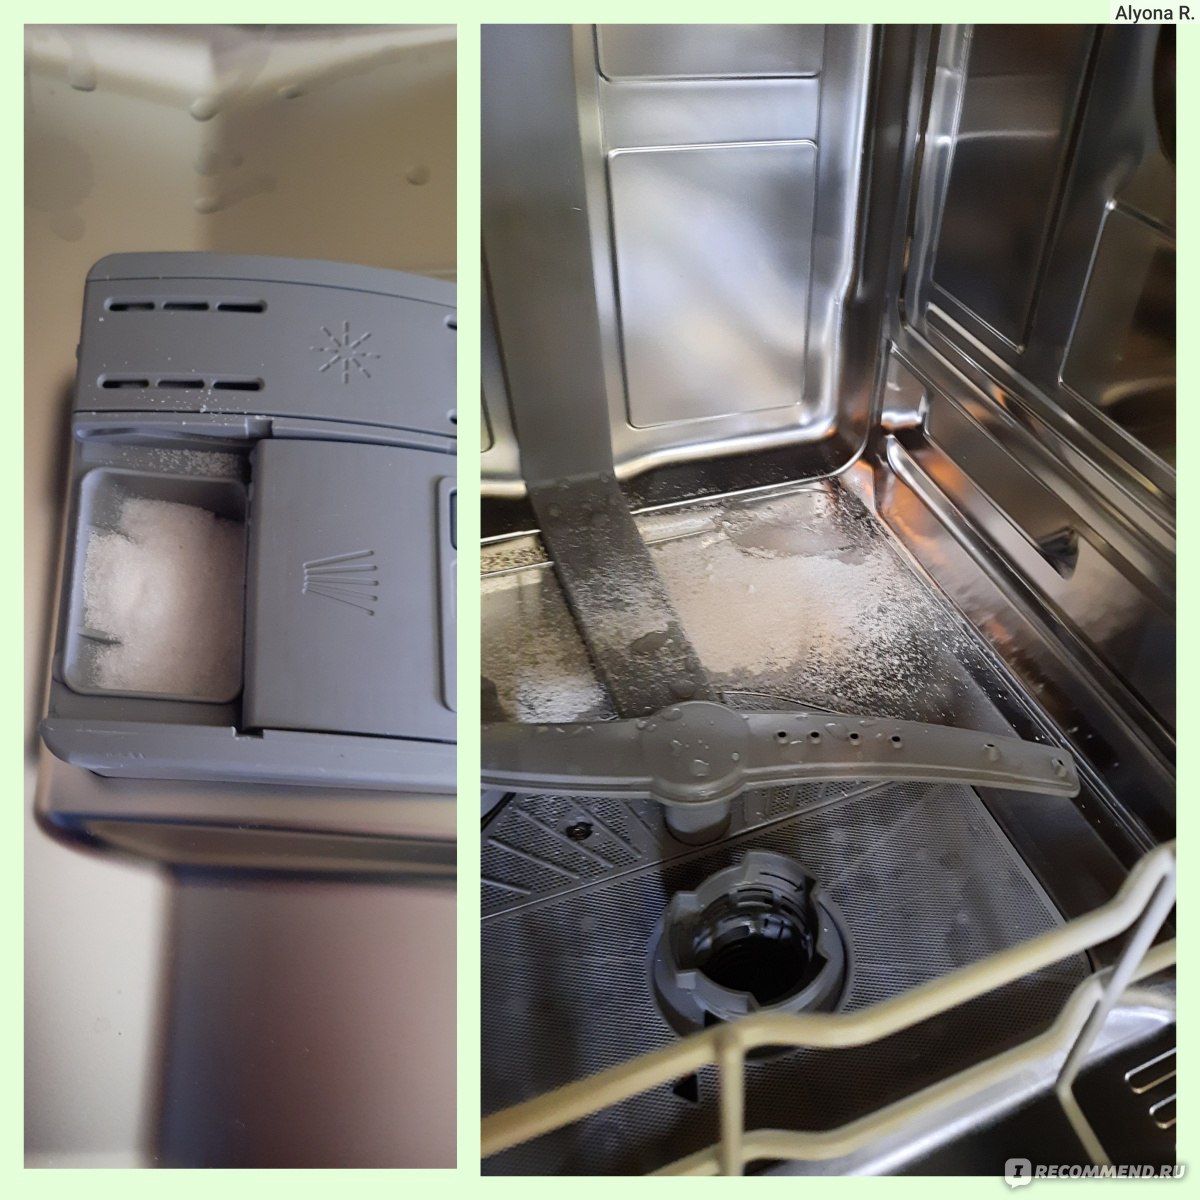 Антинакипин Care + Protect 3 в 1 для стиральных и посудомоечных машин фото